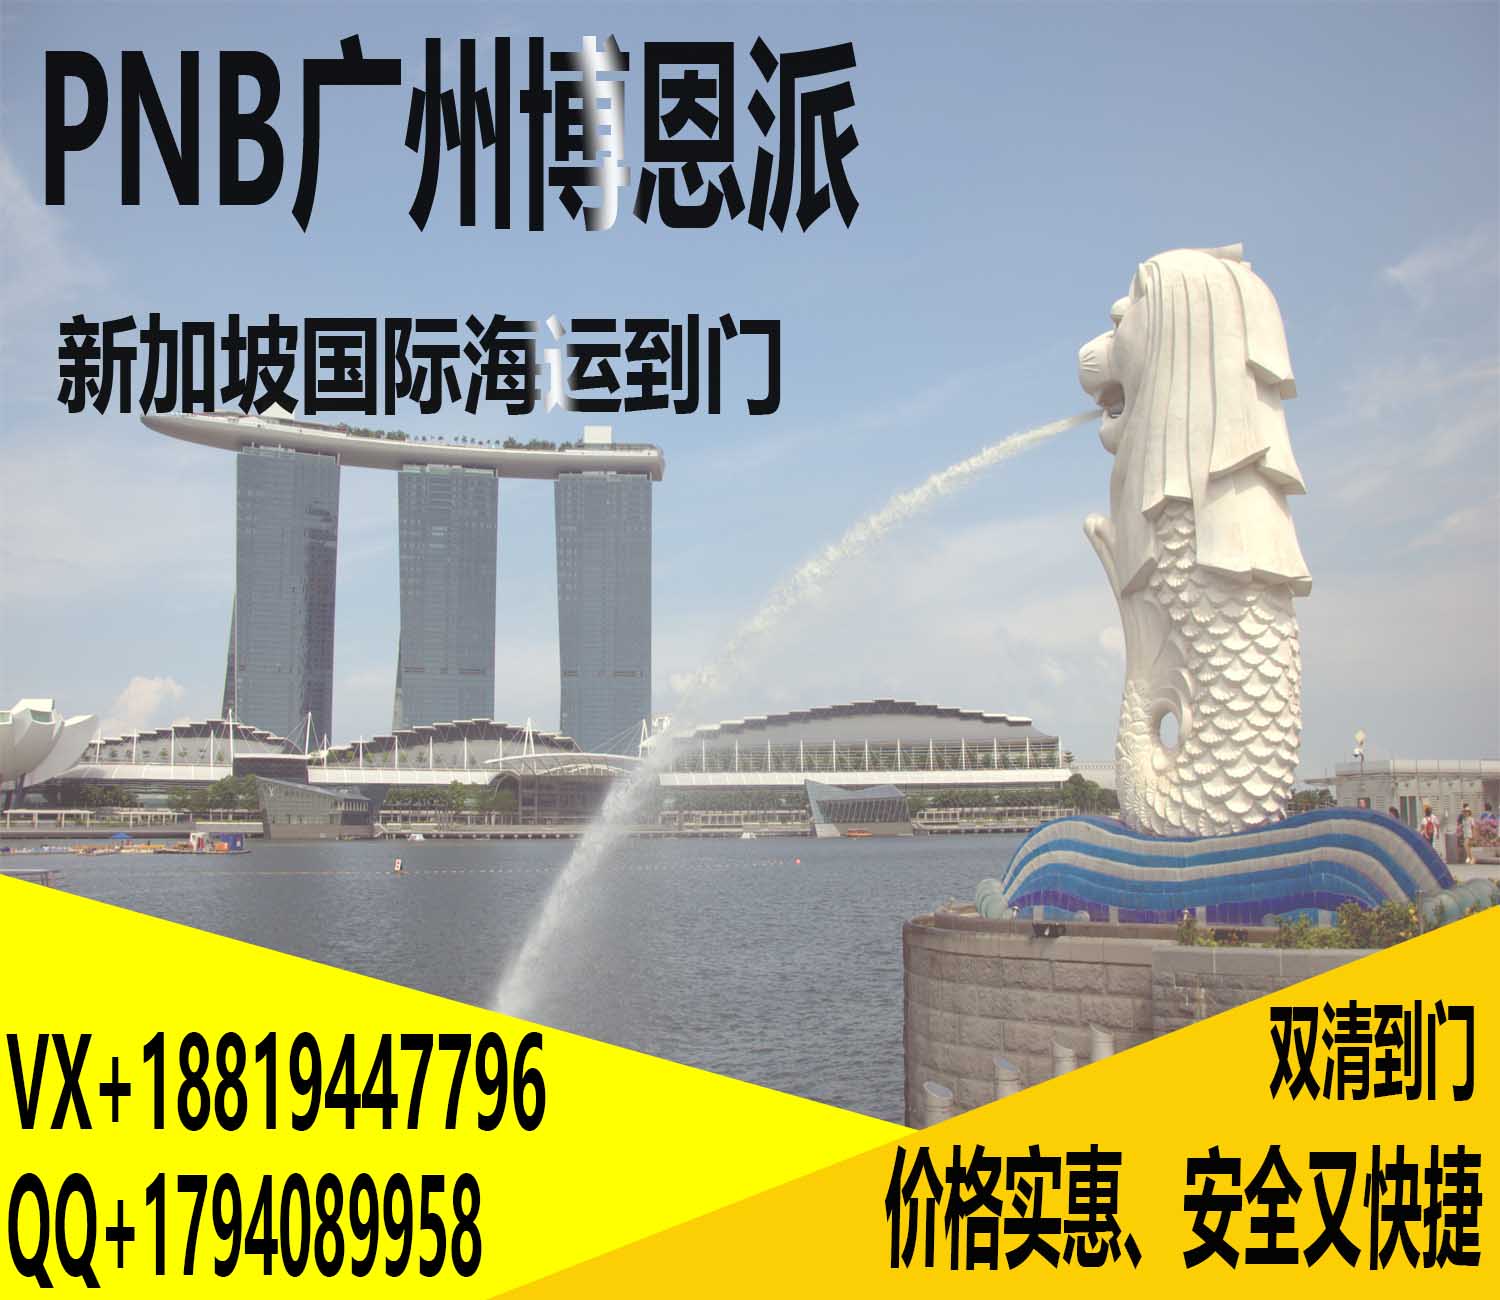 中国海运到新加坡门窗运输—PNB博恩派